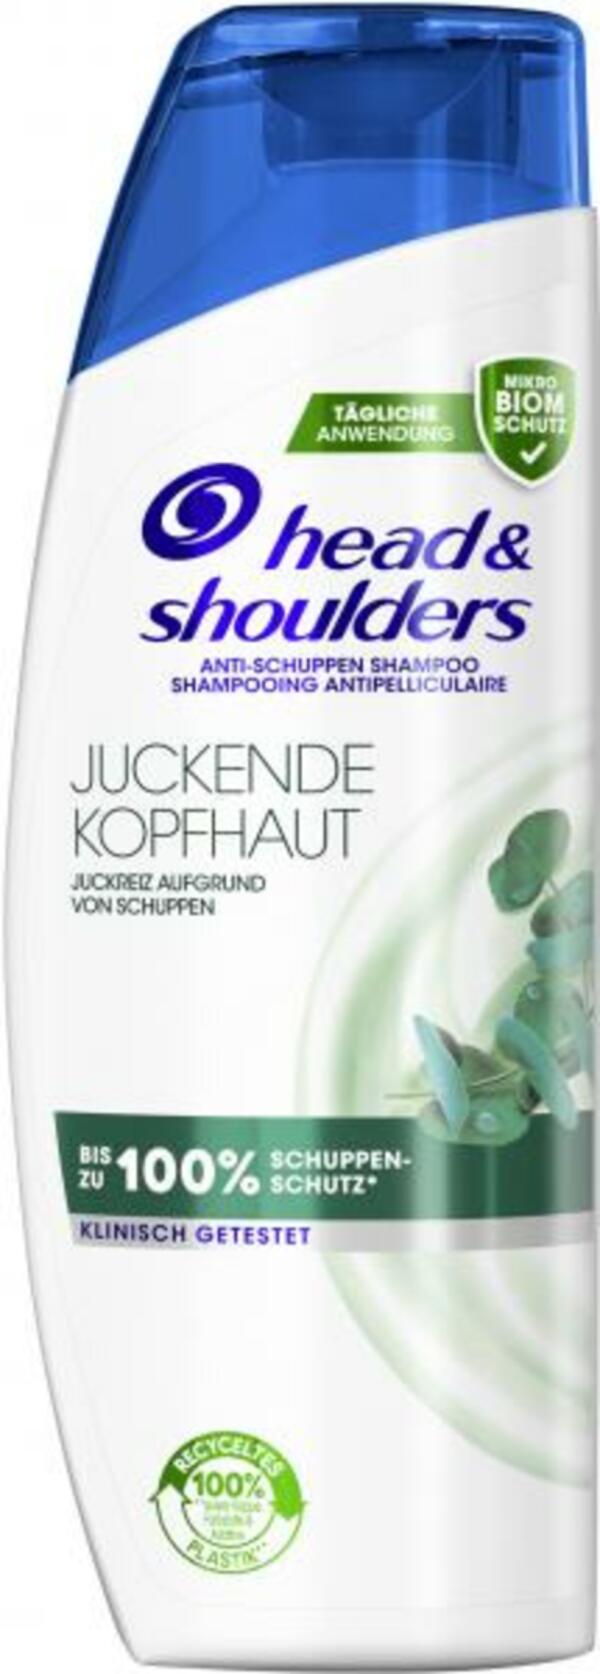 Bild 1 von Head & Shoulders Anti-Schuppen Shampoo Juckende Kopfhaut